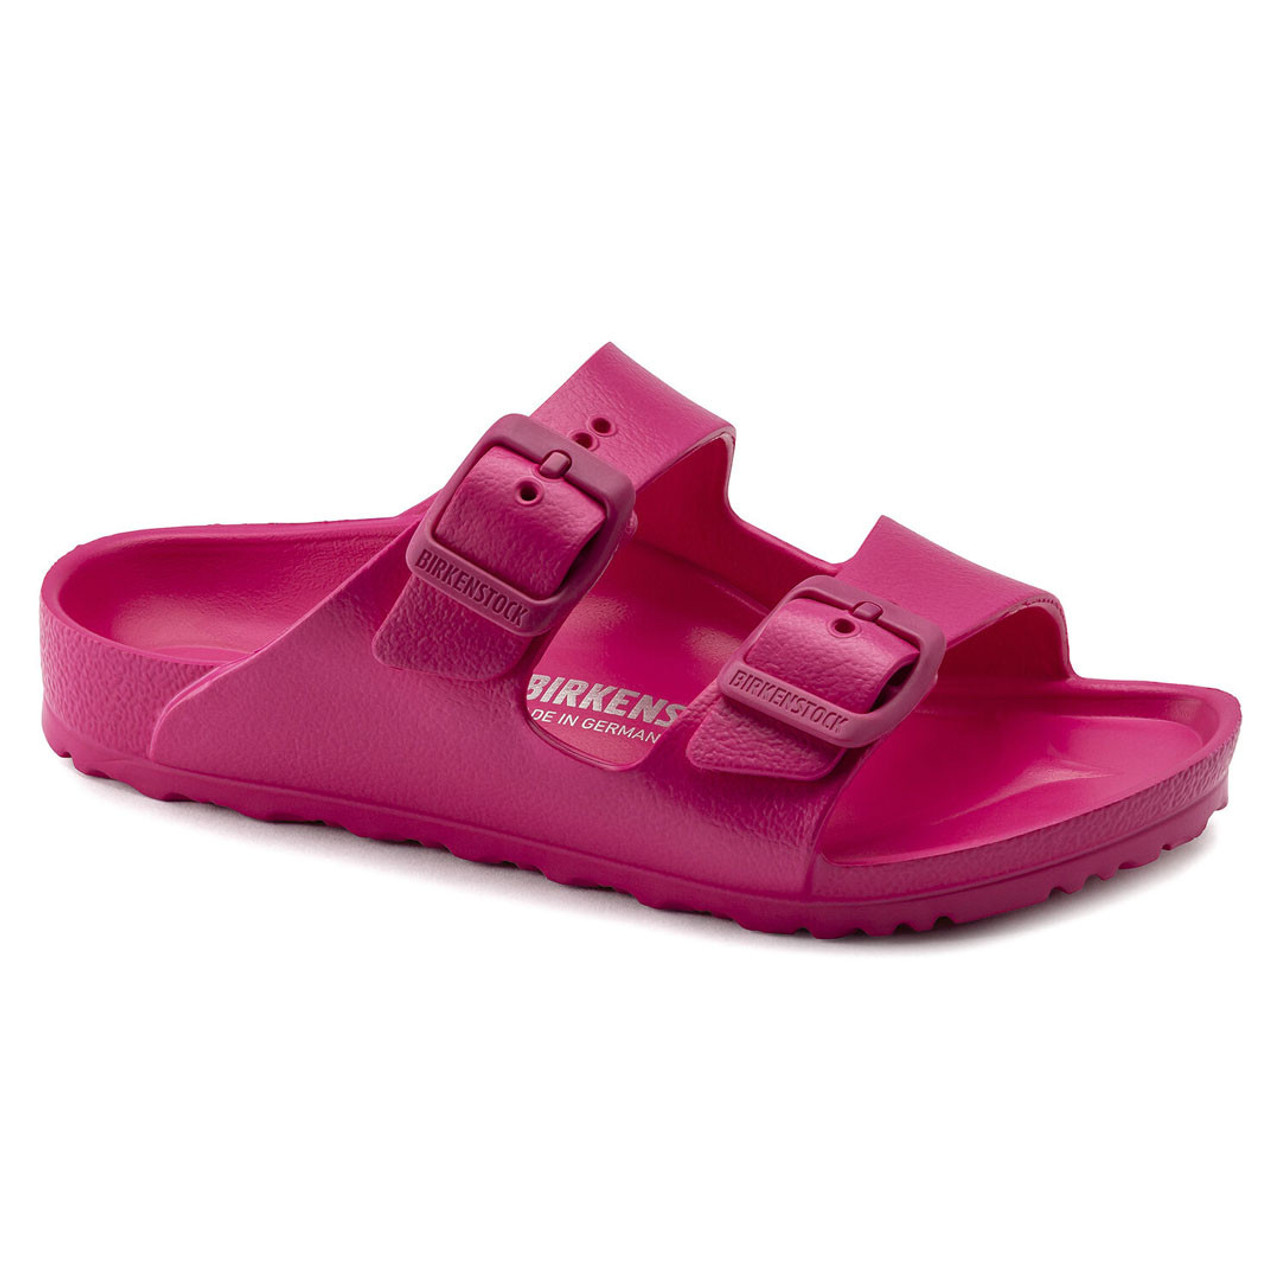 purple birkenstock sandals